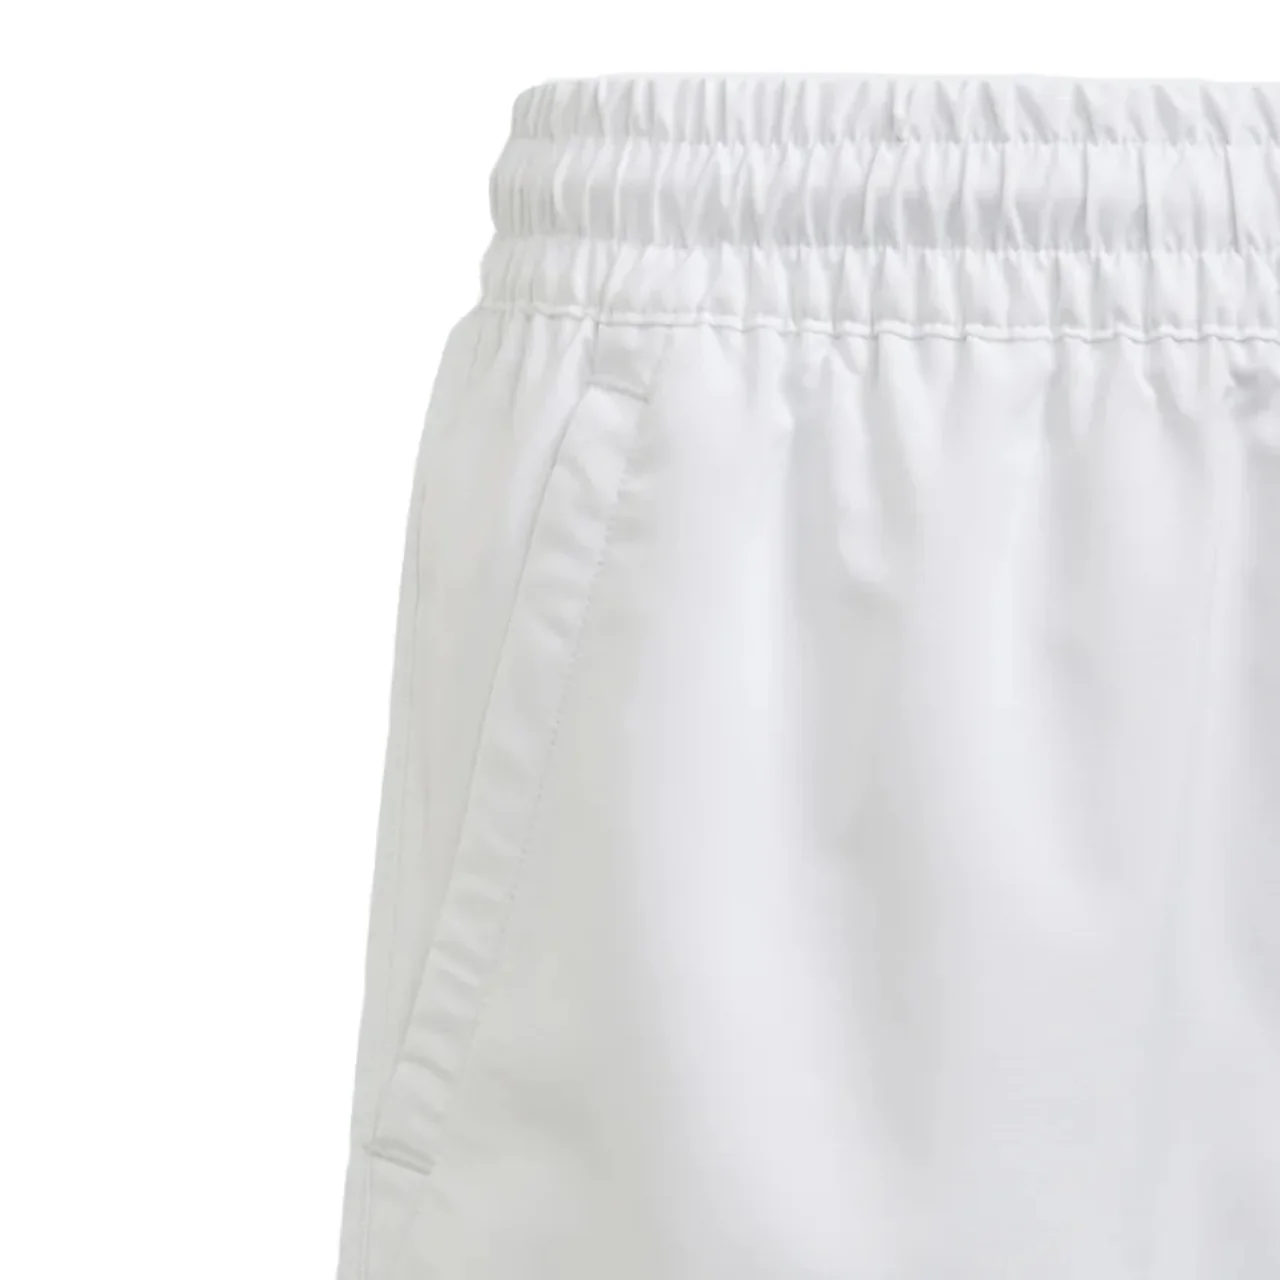 Adidas Club 3-Stripe Shorts Boys White